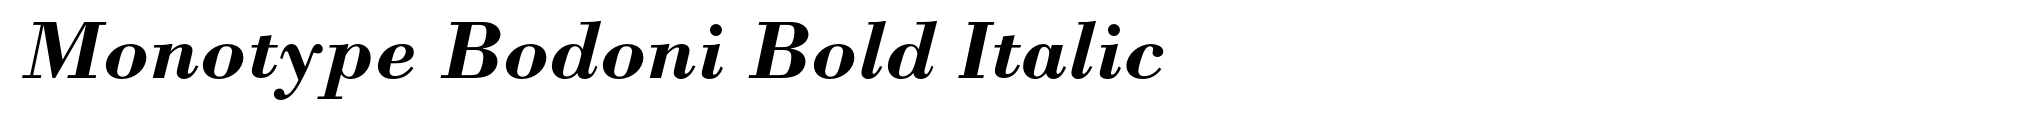 Monotype Bodoni Bold Italic image